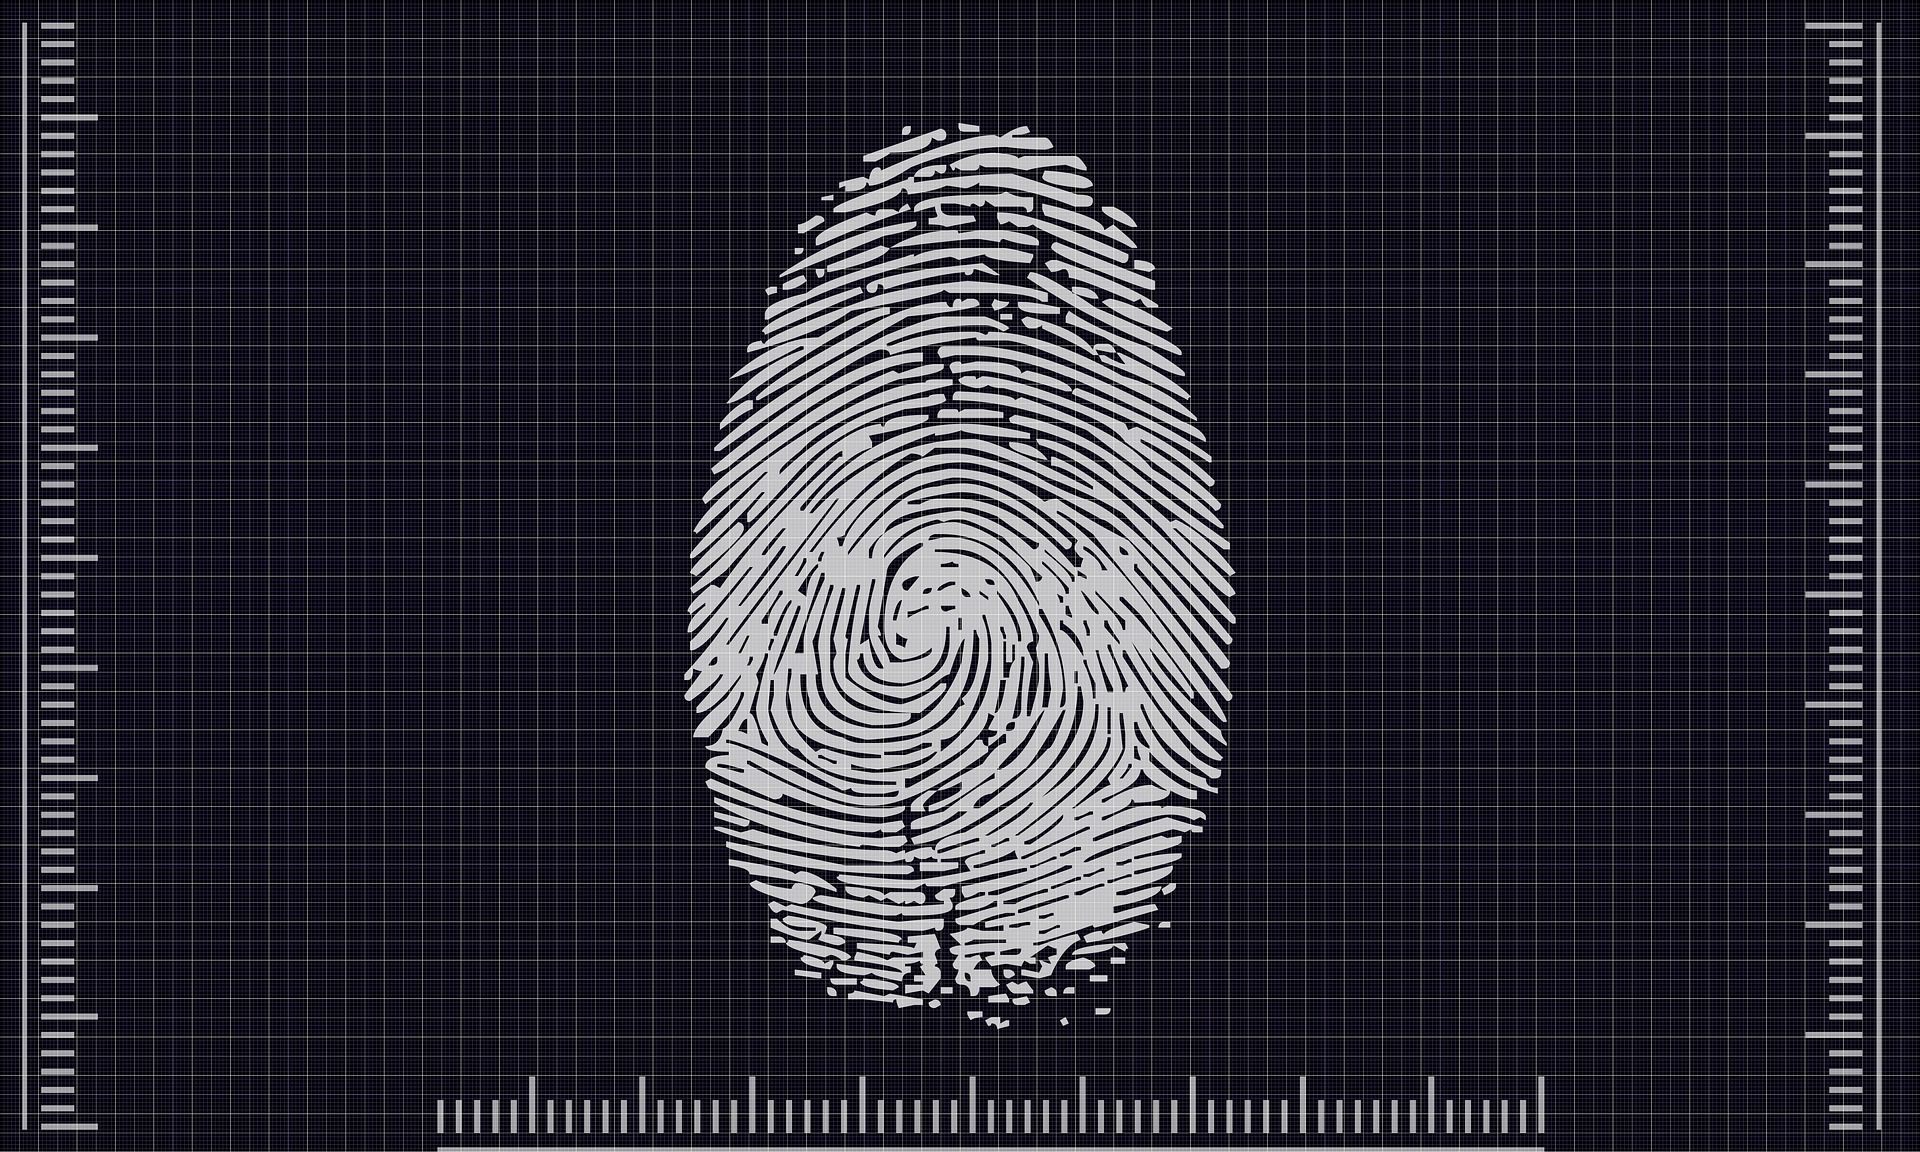 scan of fingerprint